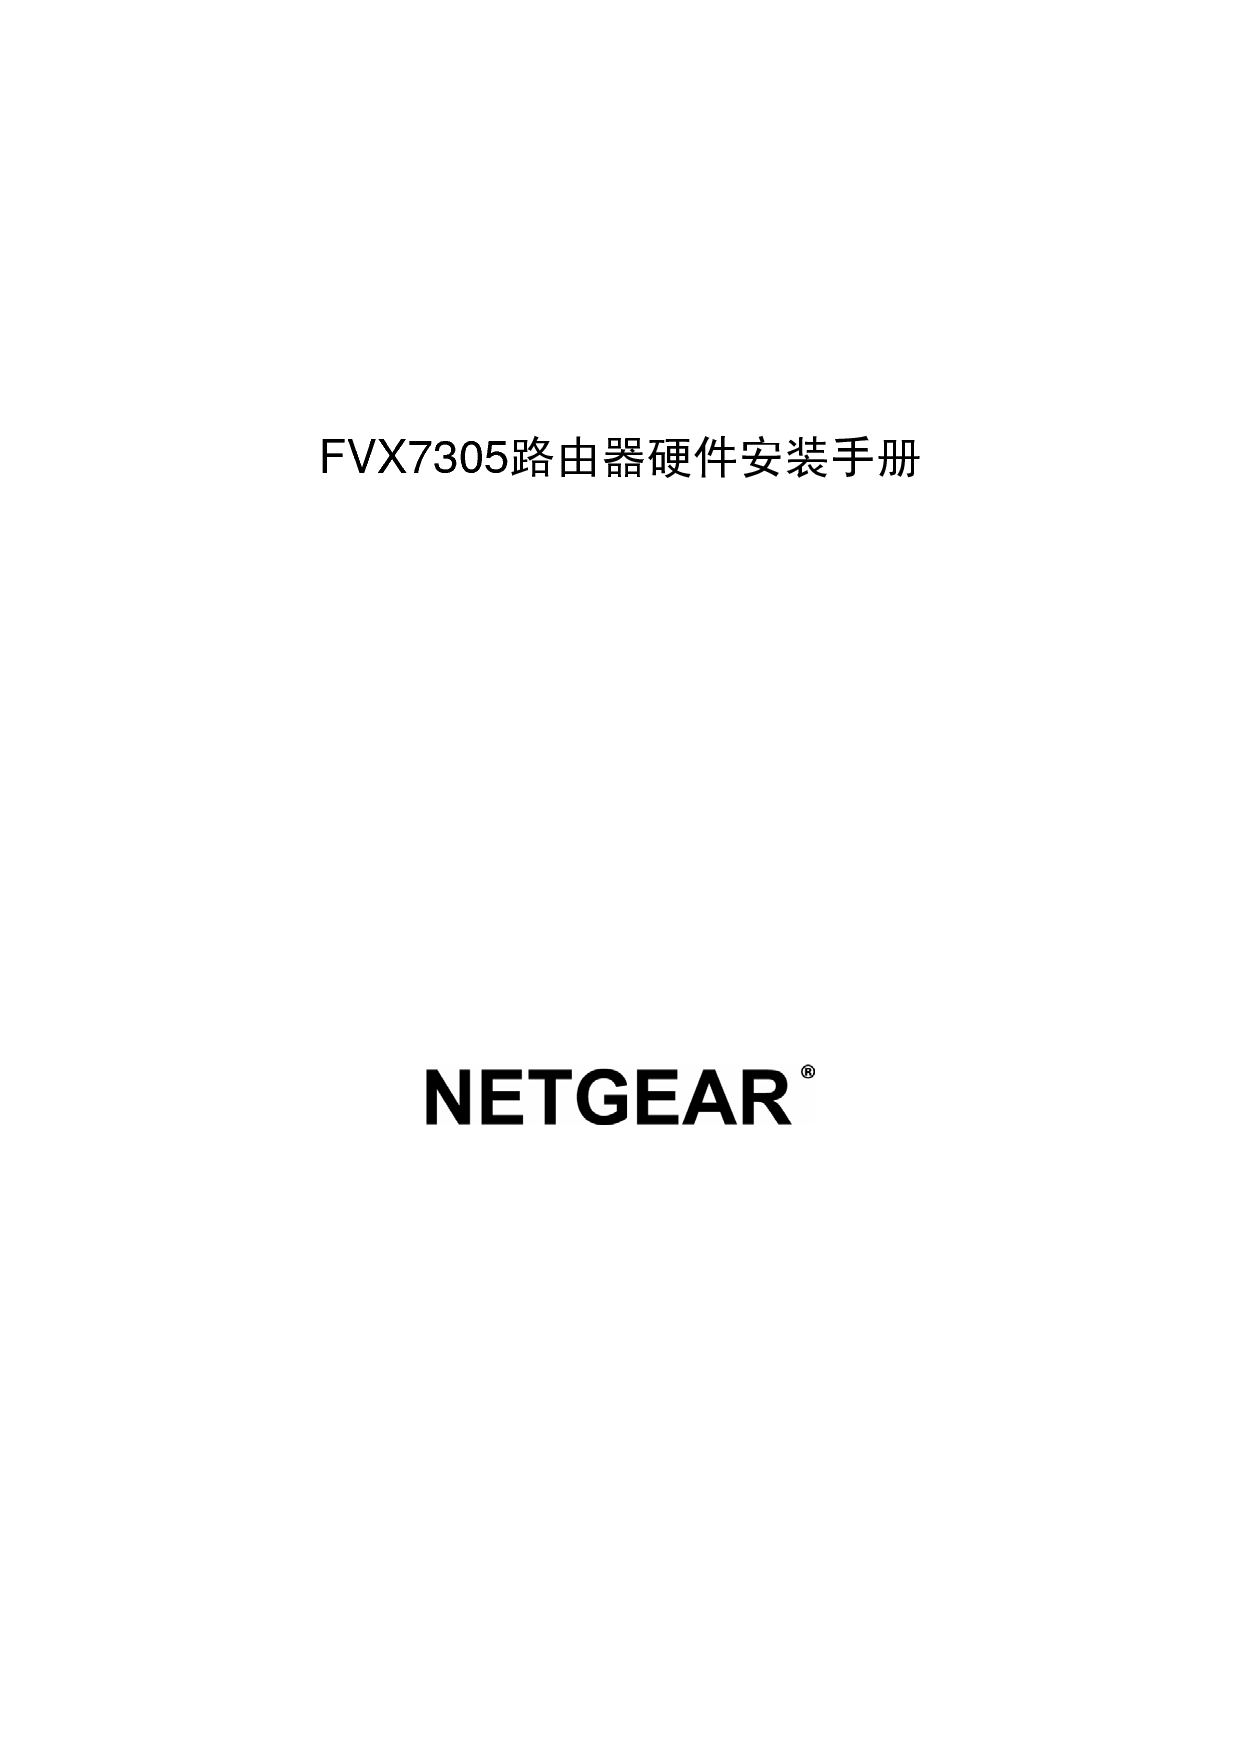 网件 Netgear FVX7305 快速安装指南 封面